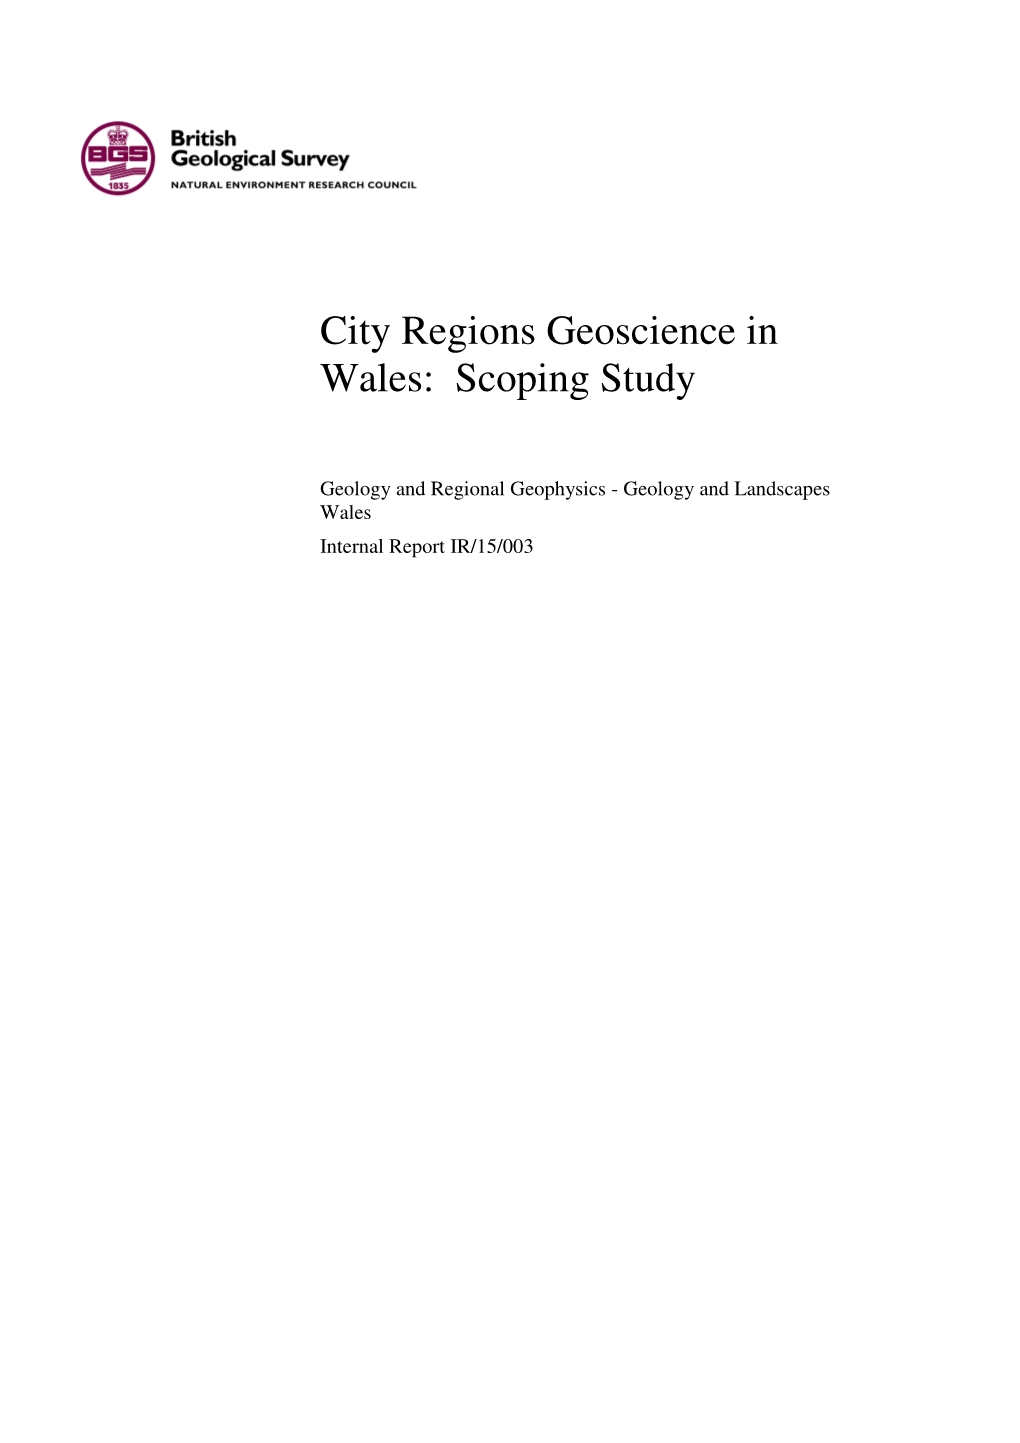 City Regions Geoscience in Wales: Scoping Study